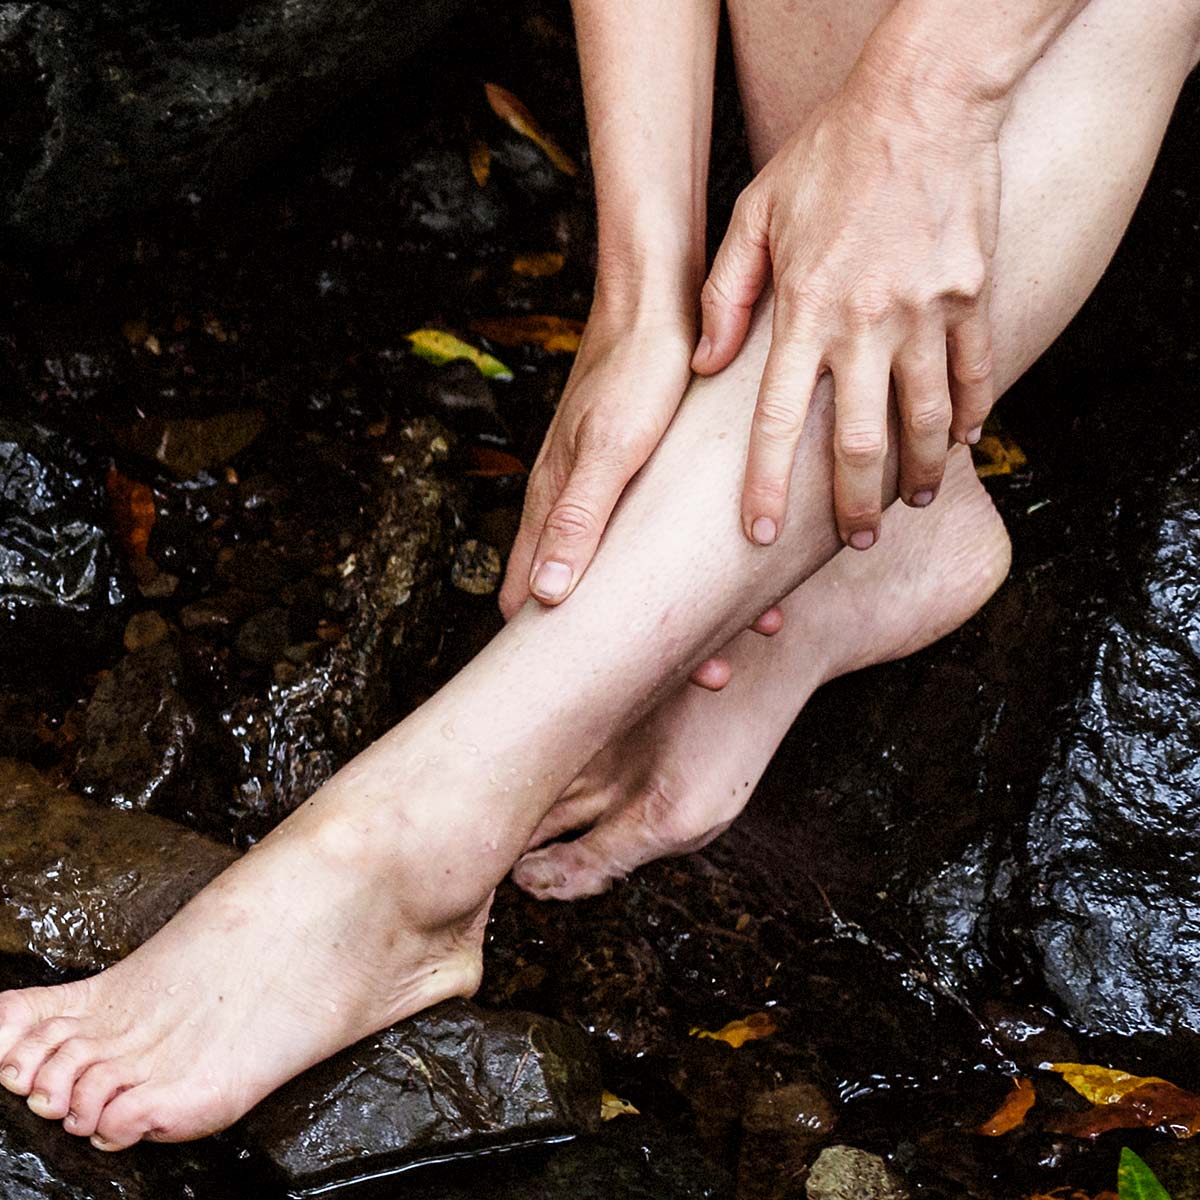 model rubbing body oil on legs in waterfall